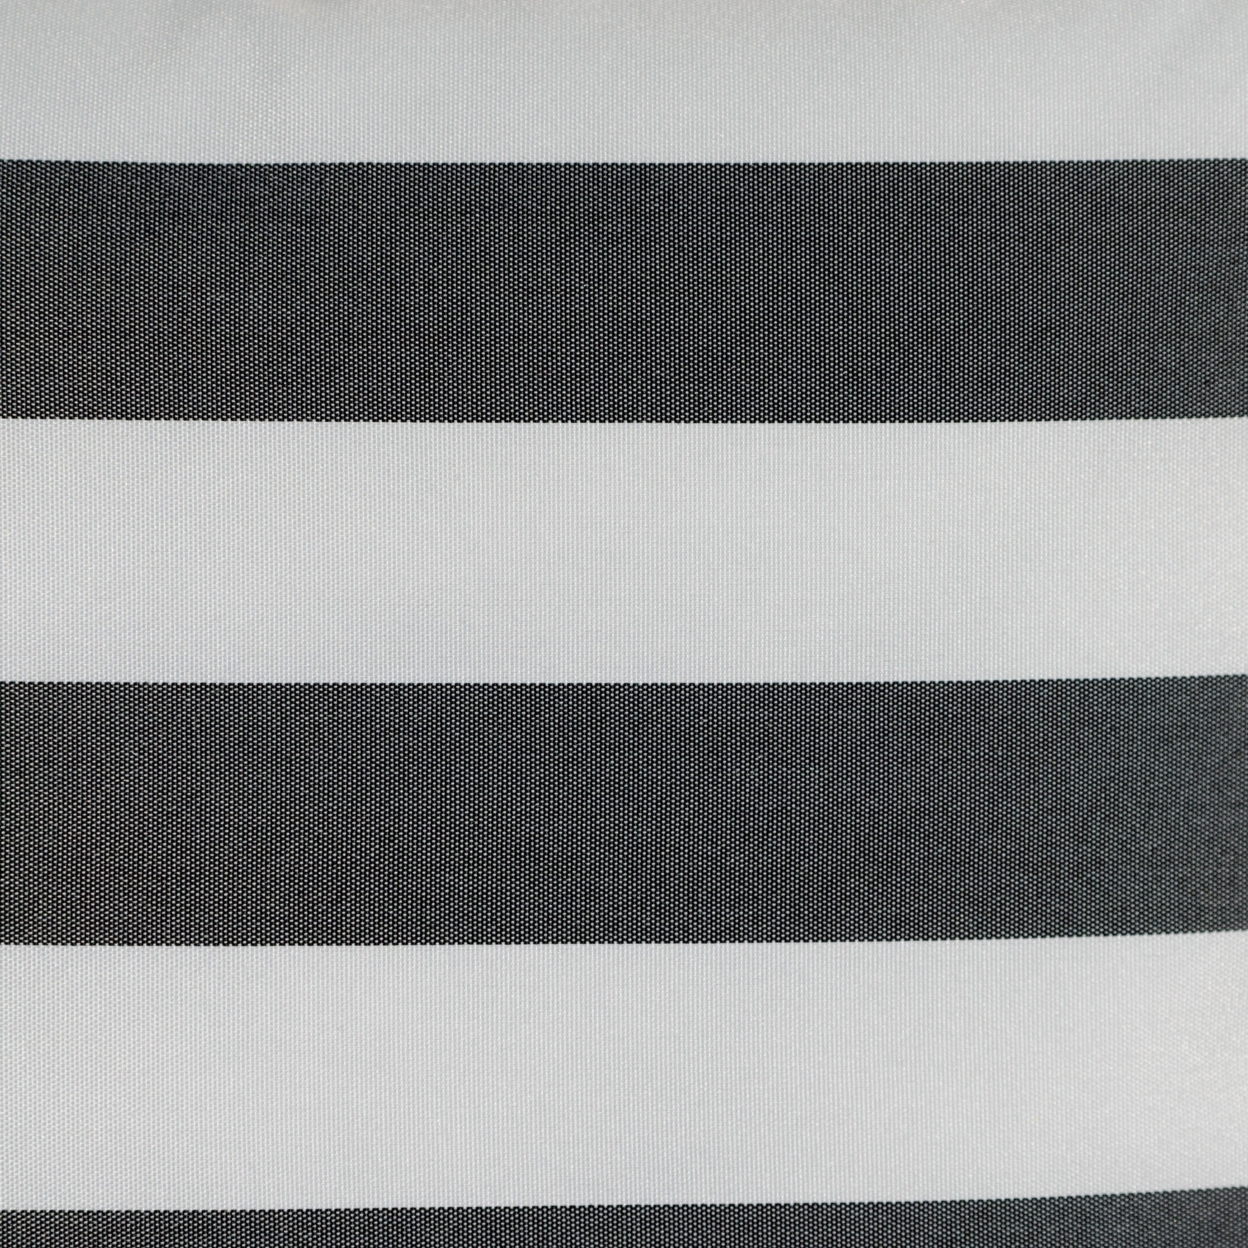 Coronado Outdoor Stripe Water Resistant Square Throw Pillow - Brown/white, Single